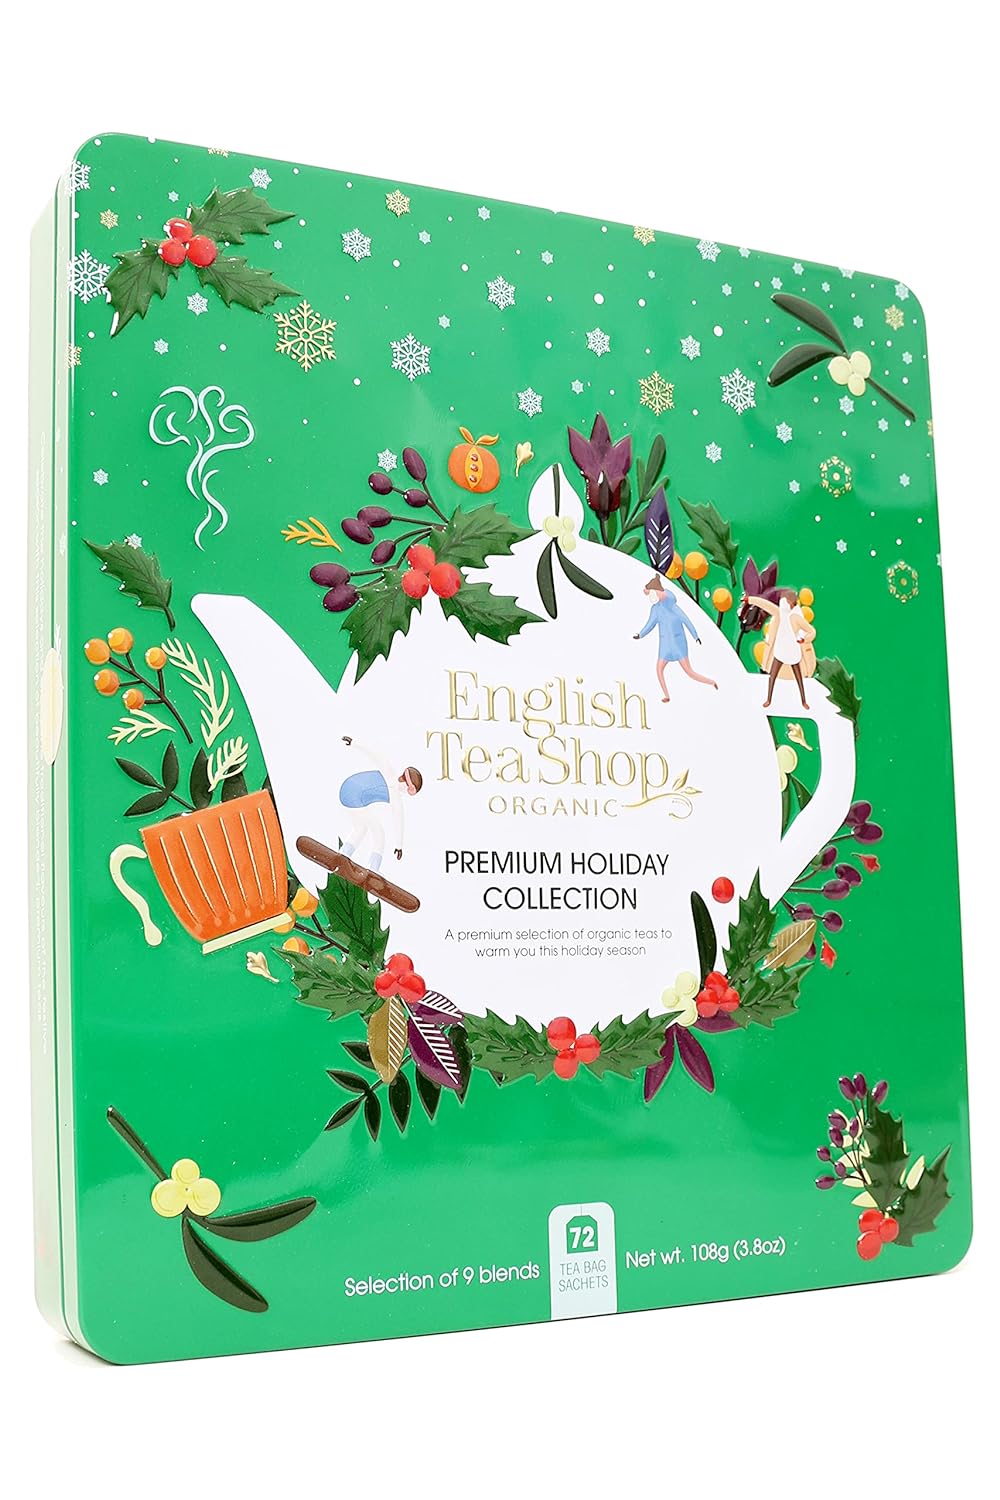 English Tea Shop Organic Premium Holiday Collection Green Gift Tin 72 Tea Bags Sachets, 108g